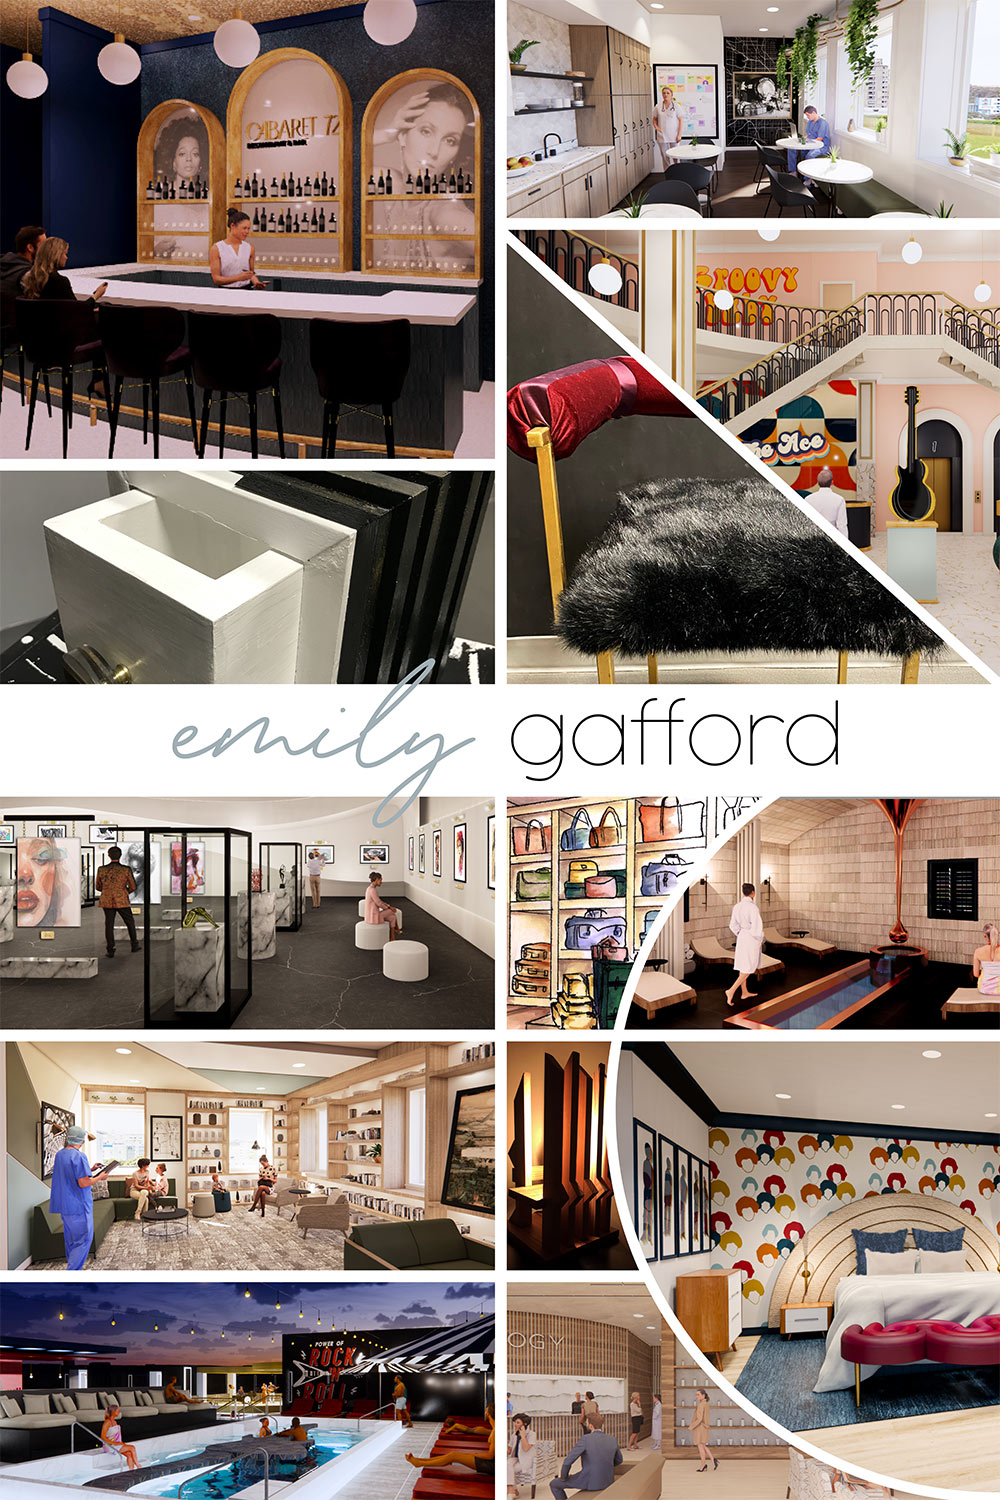 senior interior design board by Emily Gafford